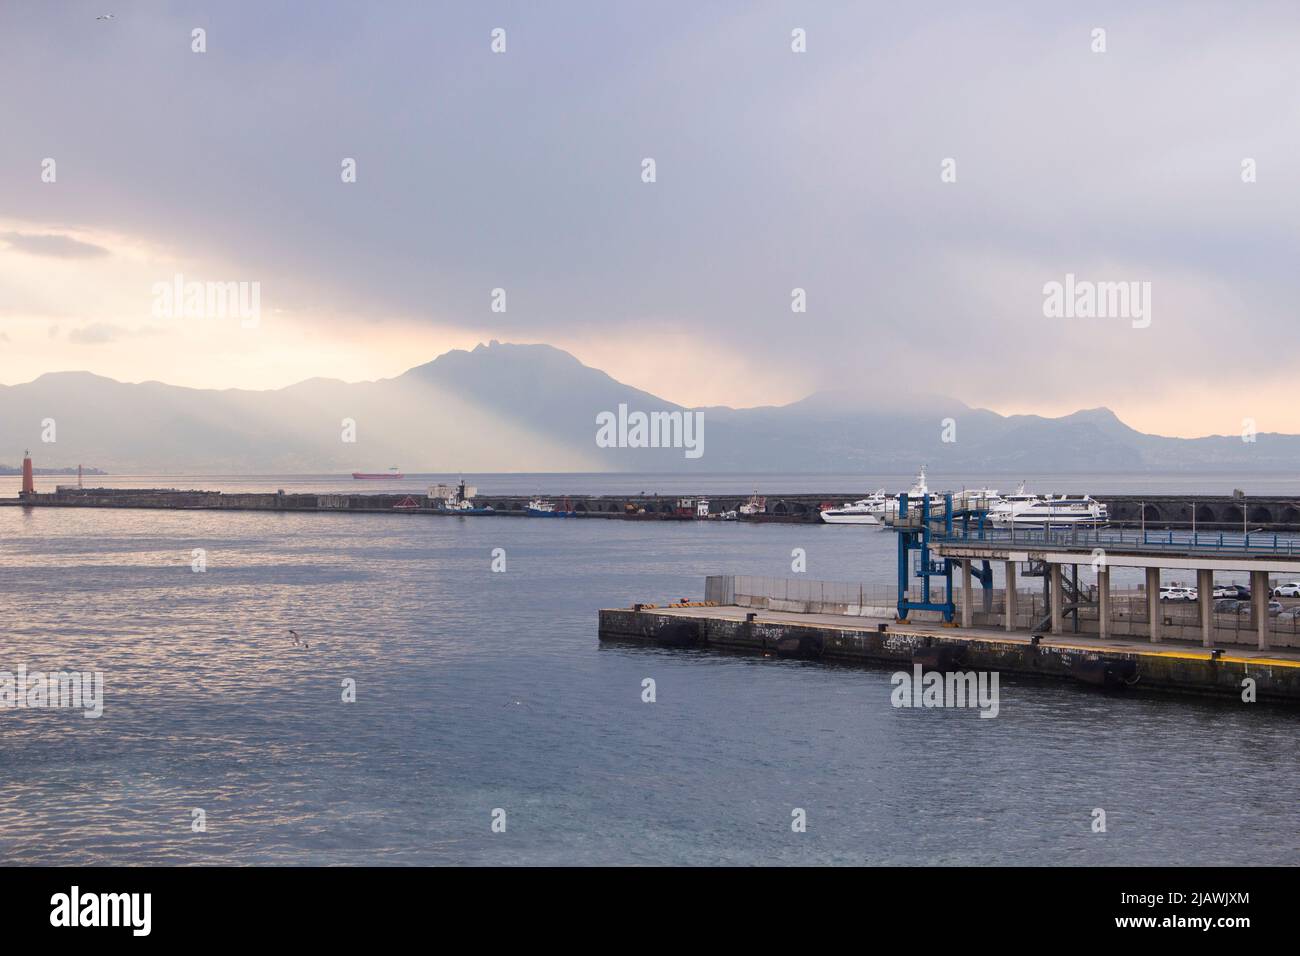 Porto di Napoli al mattino Foto de stock